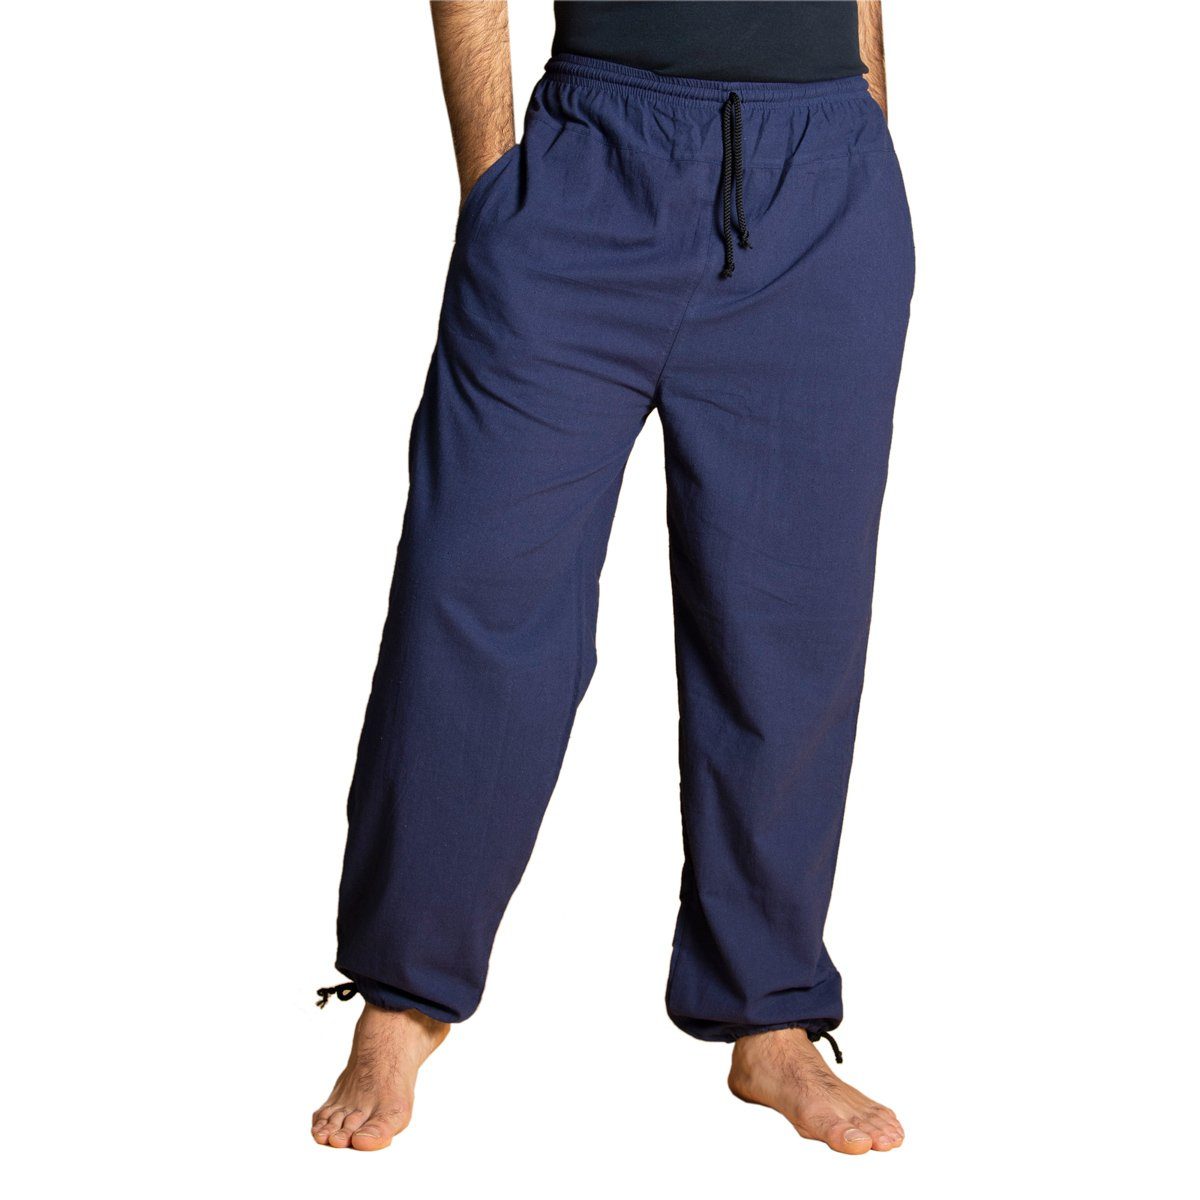 PANASIAM Wellnesshose E-Pants leichte Unisex Bundhose aus weicher Baumwolle für Damen und Herren Freizeithose mit Tunnelzug Relaxhose bequeme Sommerhose Seeblau